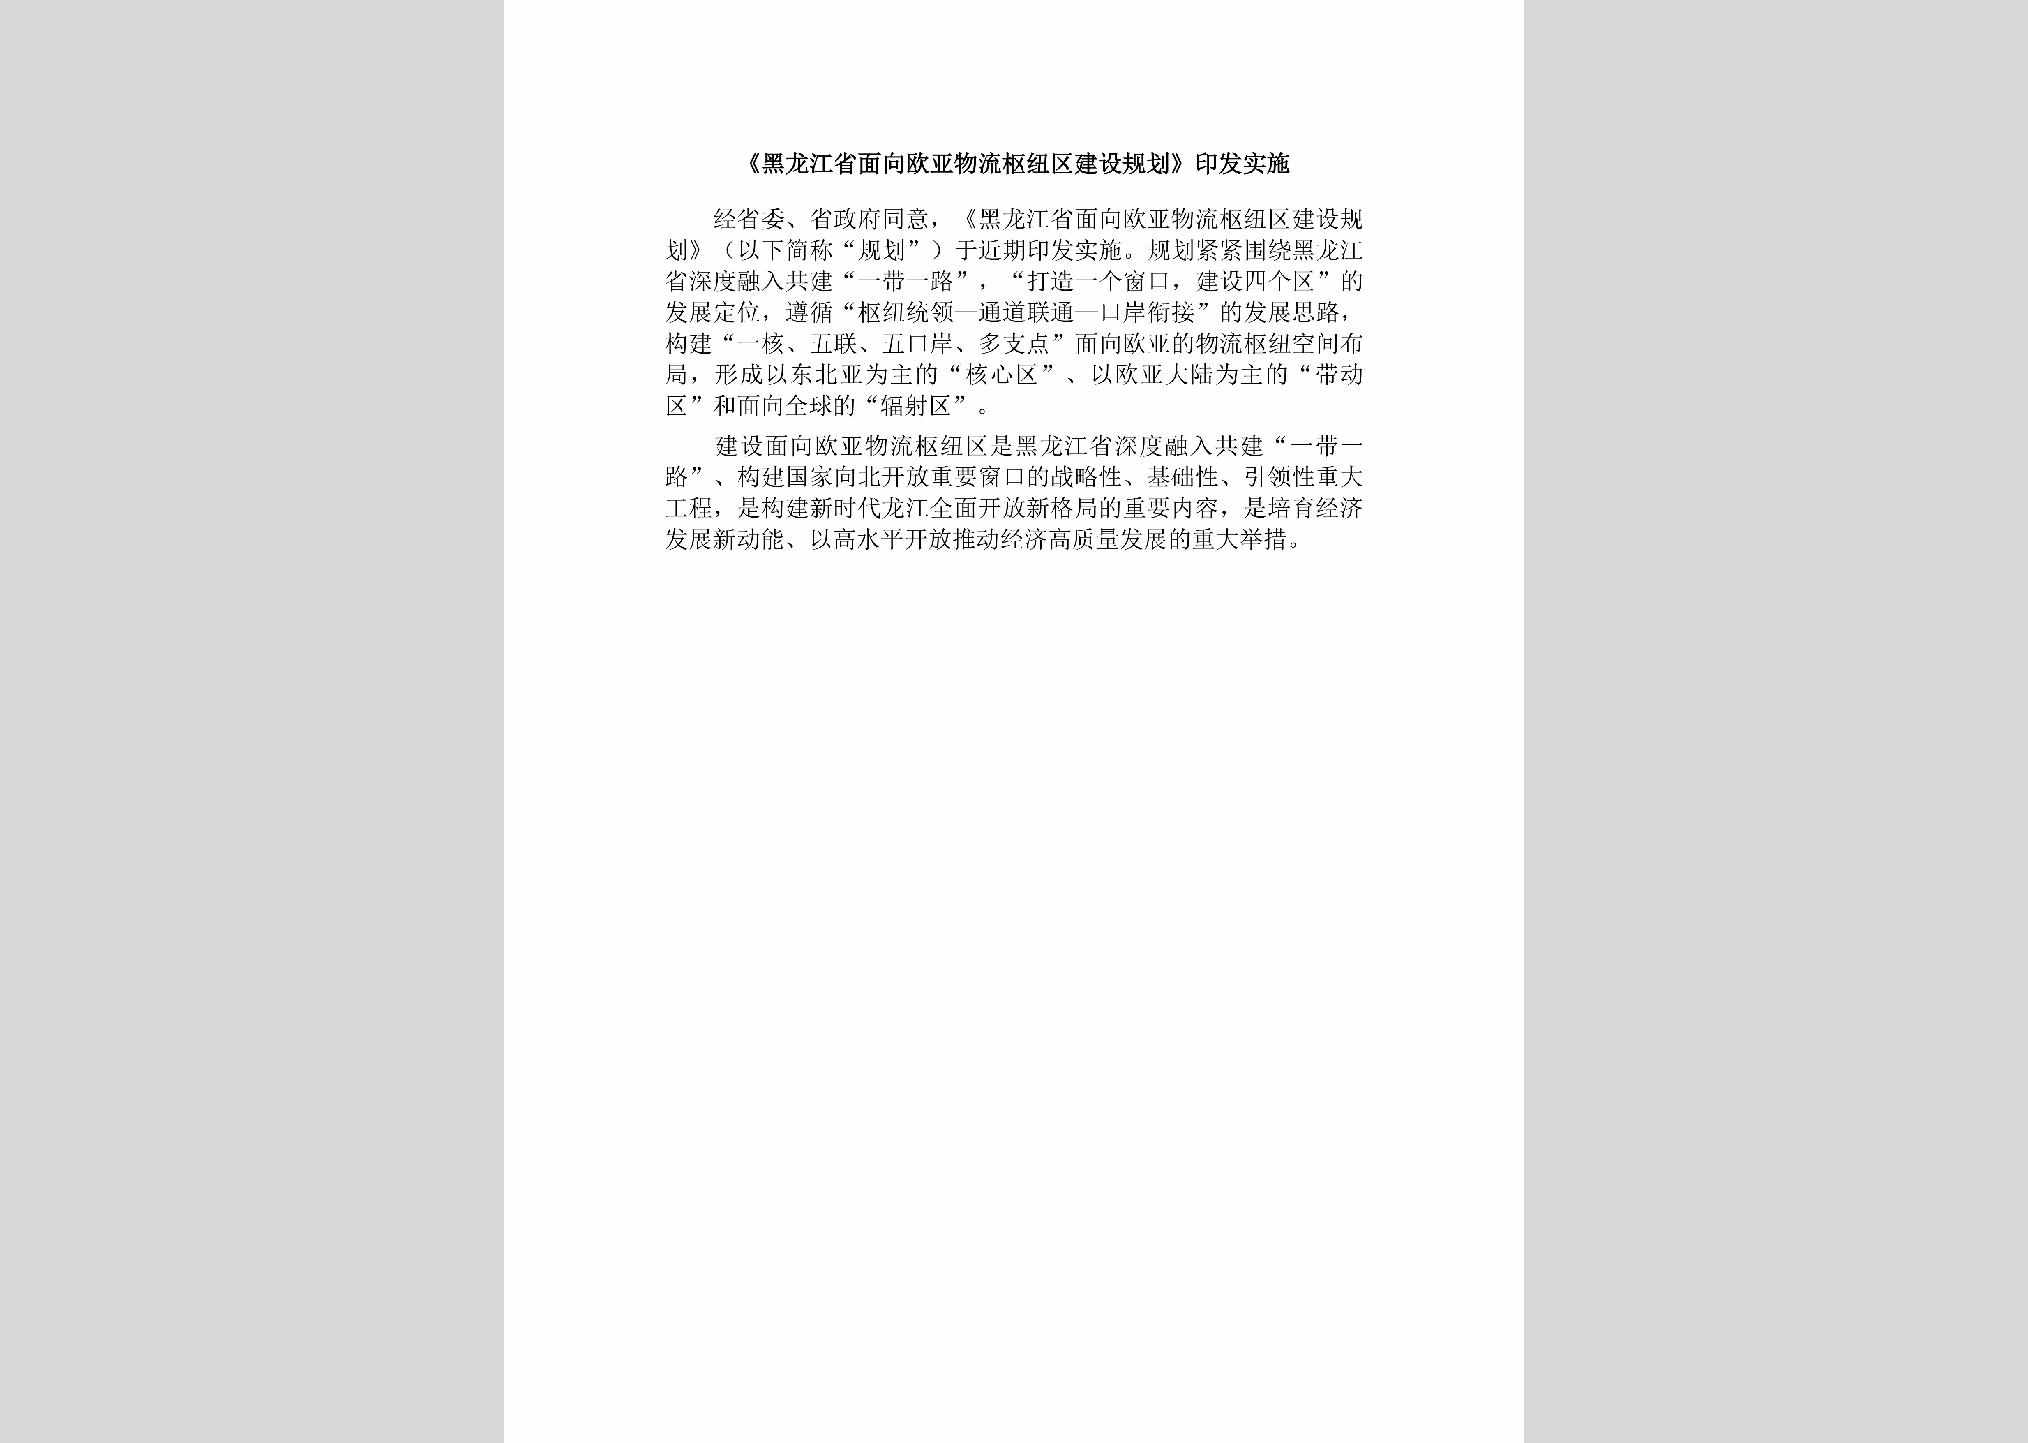 HLJ-MXOYWLSN-2019：《黑龙江省面向欧亚物流枢纽区建设规划》印发实施